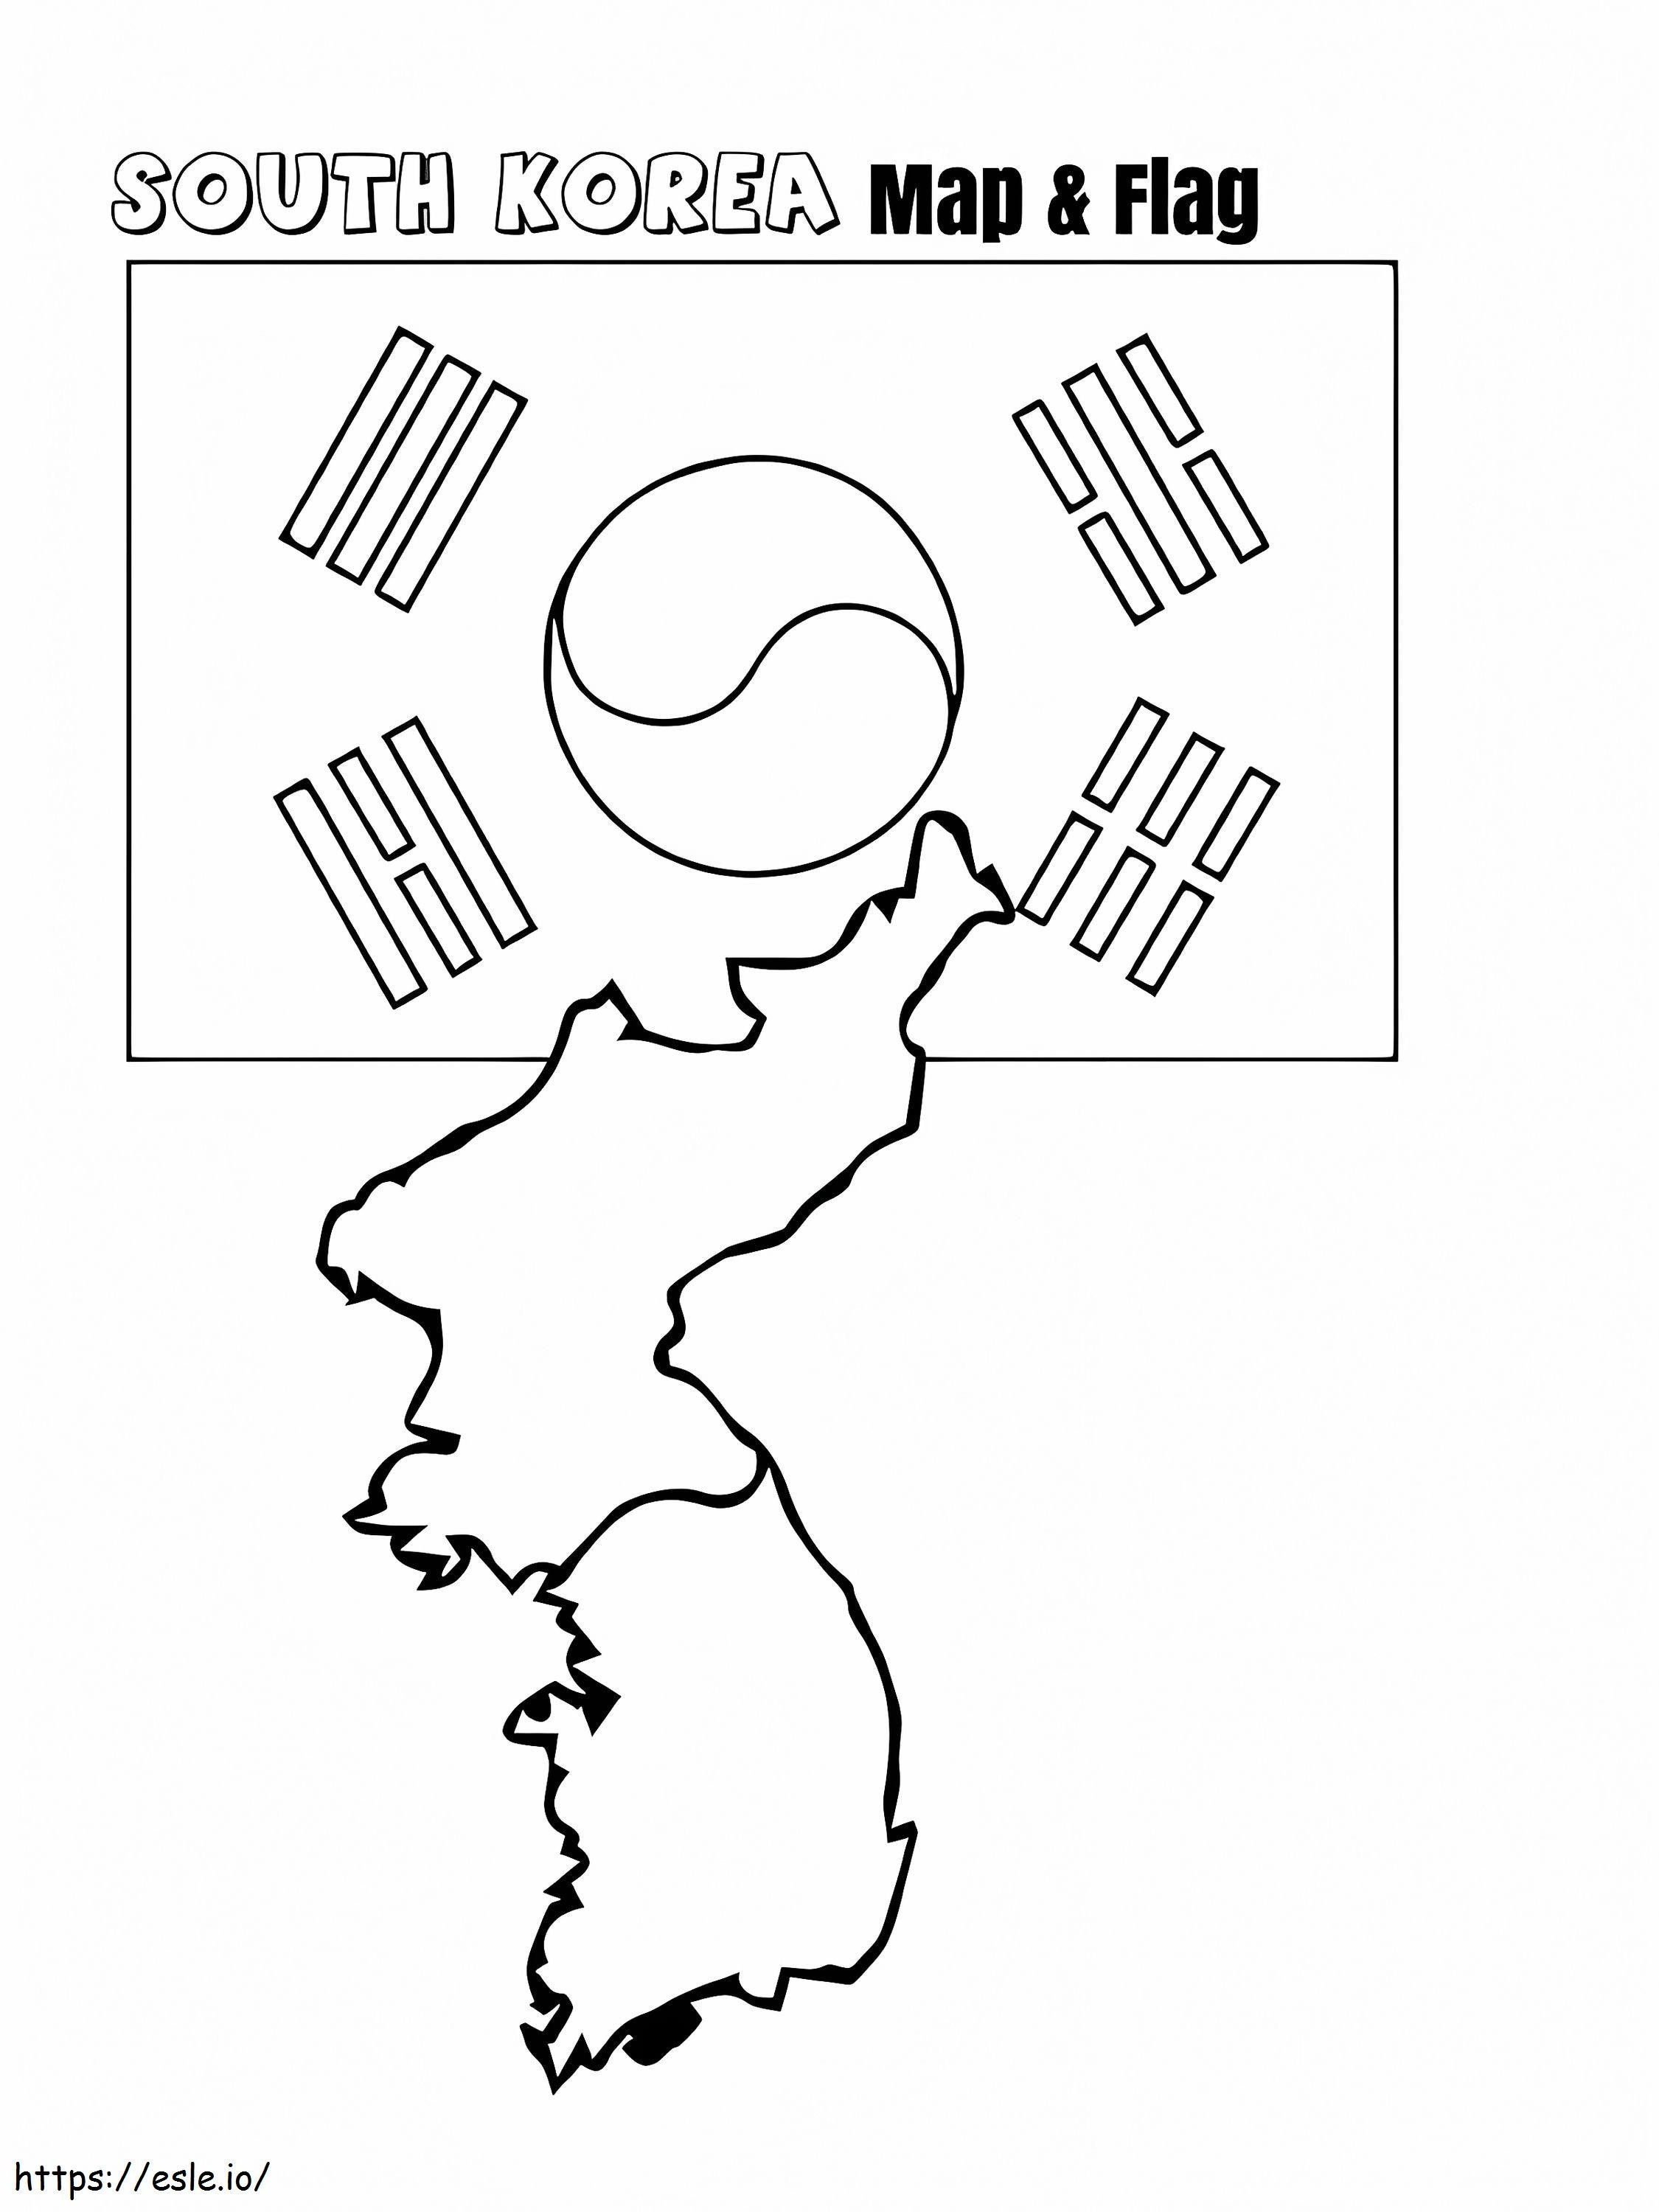 Mapa y bandera de Corea del Sur para colorear